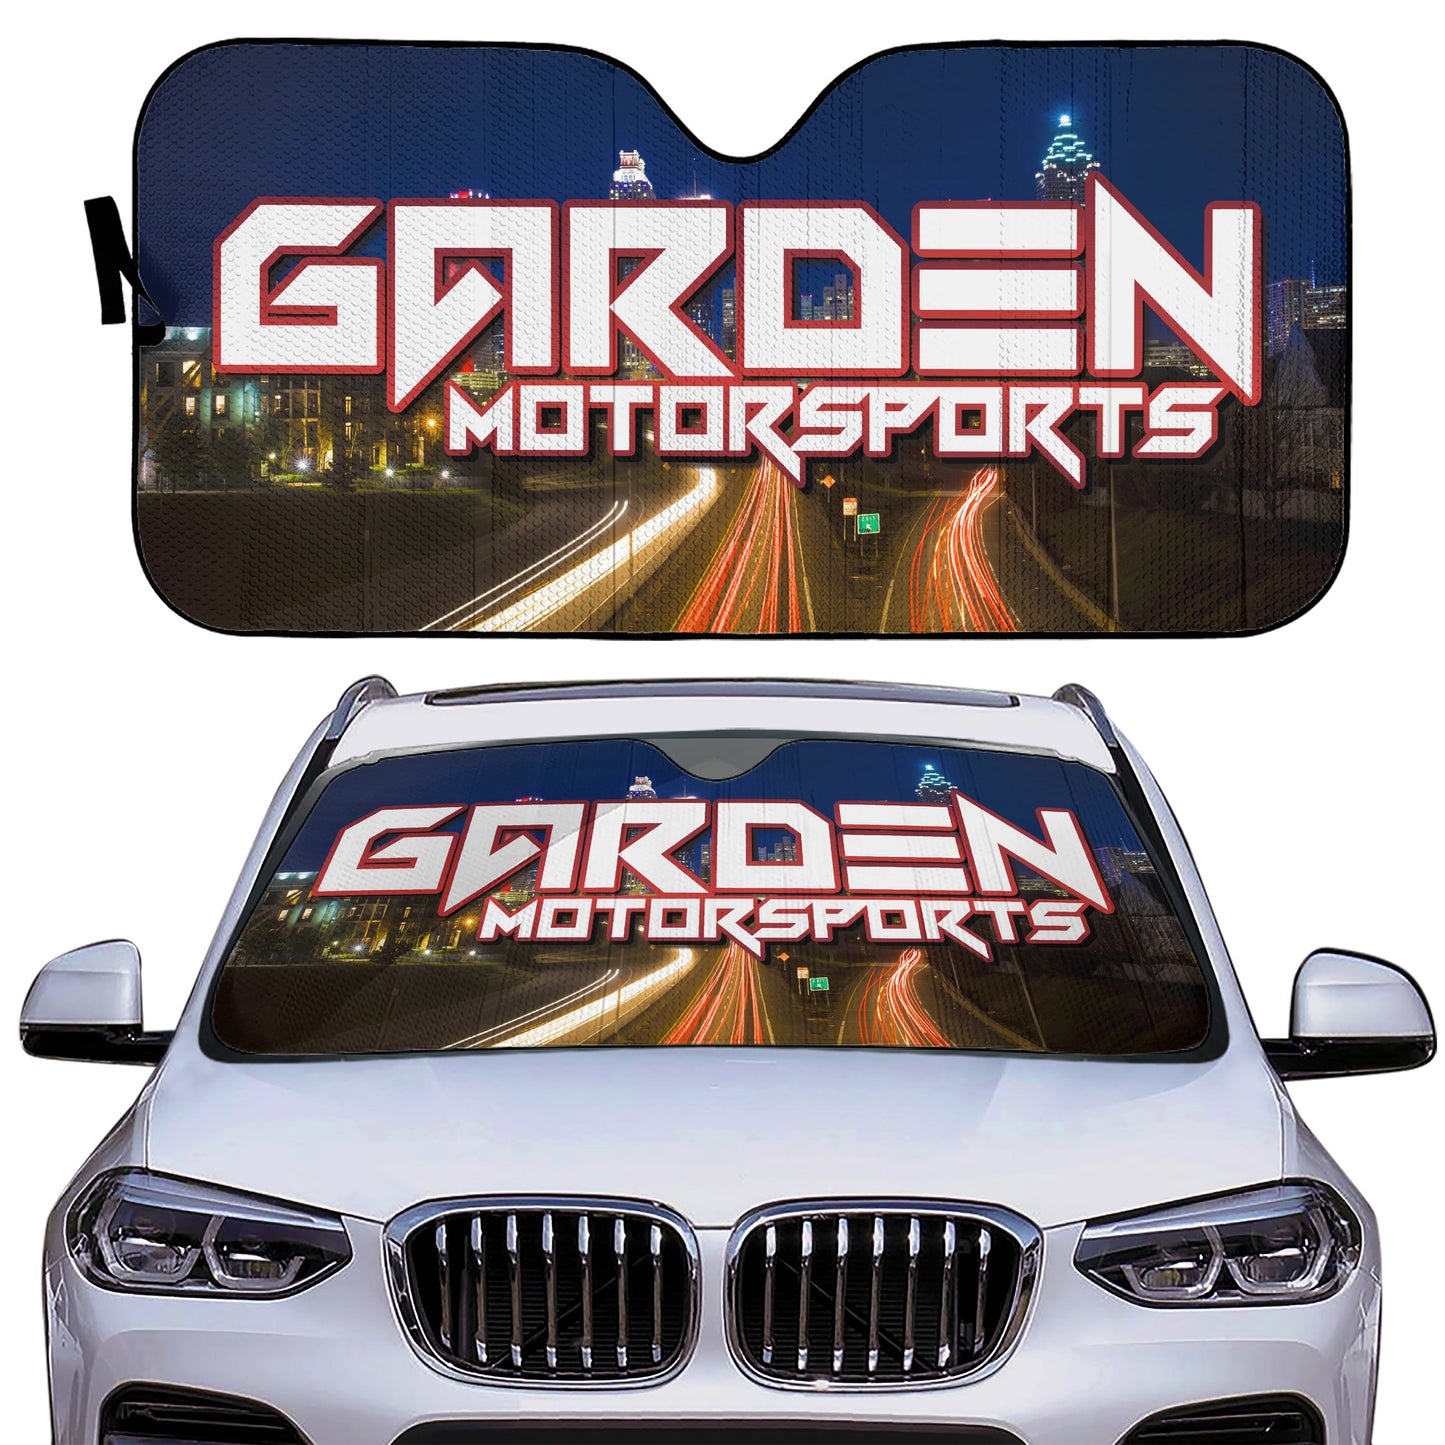 Garden Motorsports Auto Sun Shades